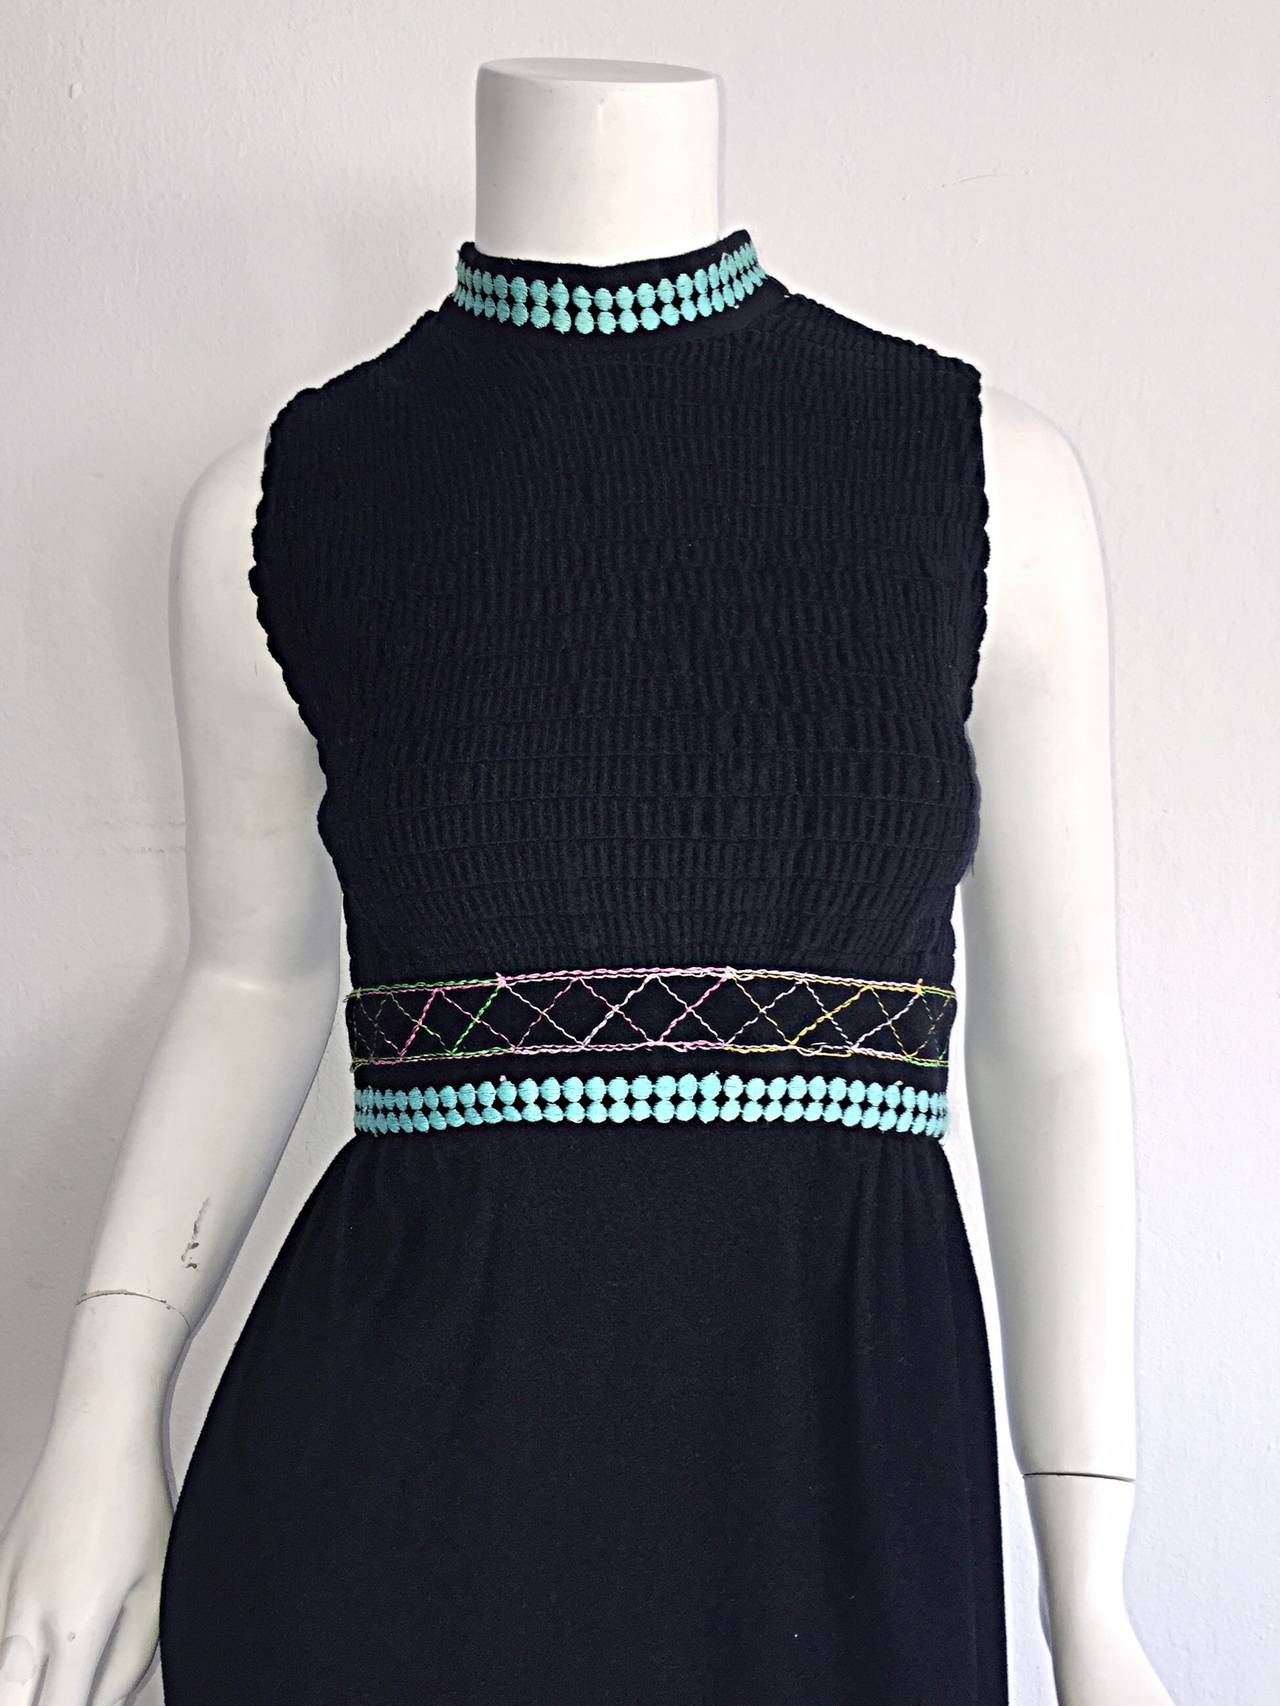 Magnifique robe longue noire Sandine Originals I. Magnin des années 1970 ! Tissage coloré à l'encolure, et surpiqûres colorées à l'ourlet. Parfait de jour comme de nuit. S'accorde parfaitement avec des sandales, des chaussures compensées ou des